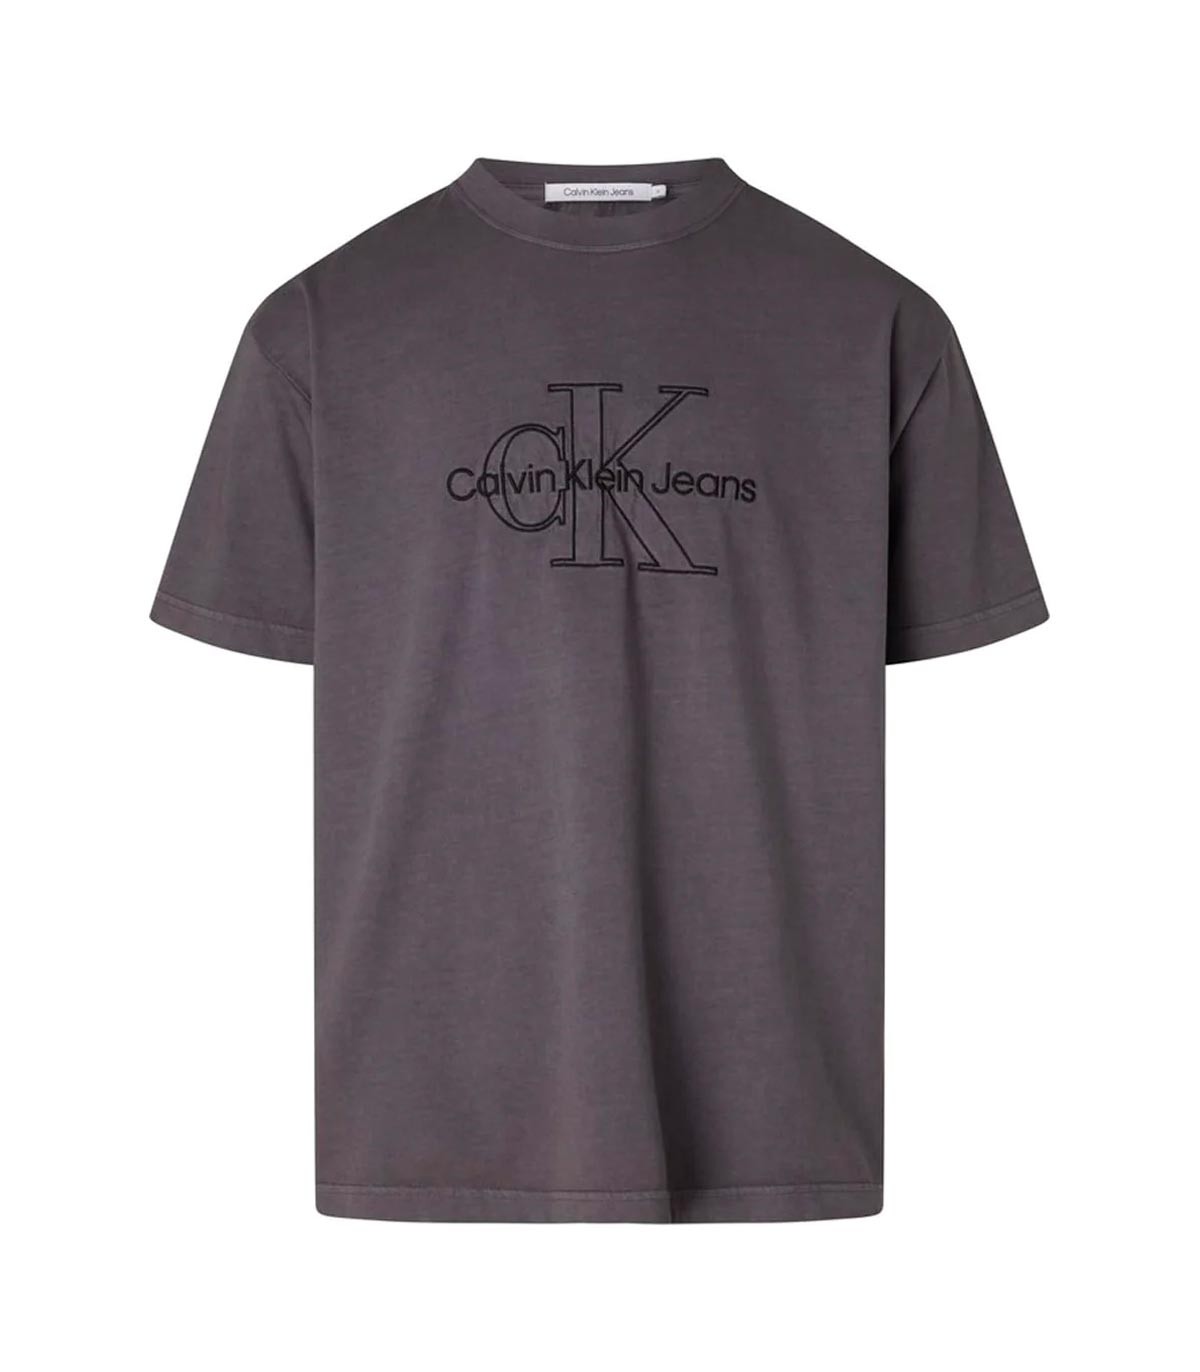 Calvin Klein - Camisetas Monologo Washed Tee, Pt2 - Negro